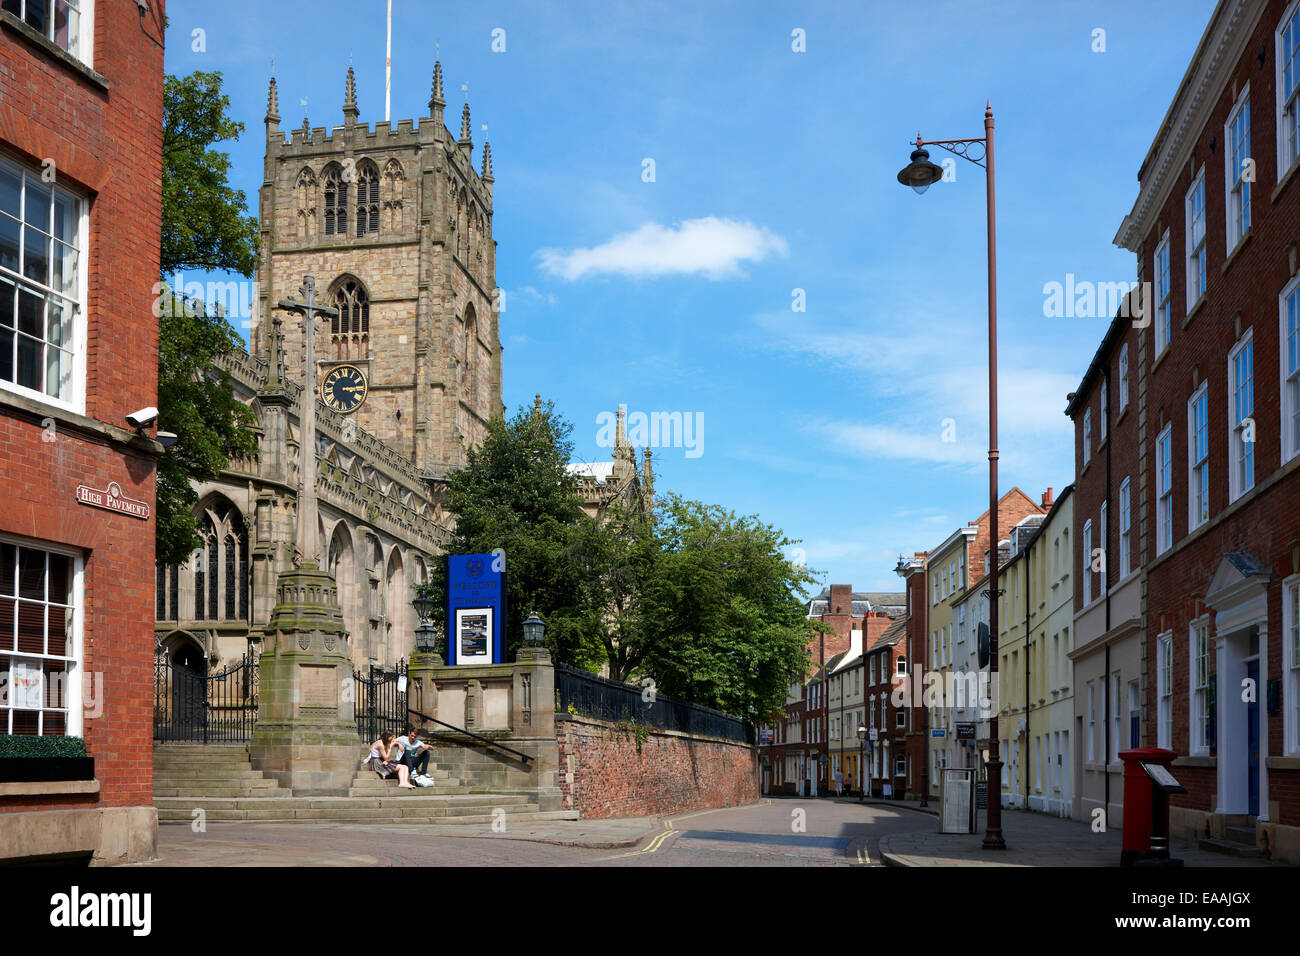 Le centre-ville de Nottingham. L'église St Mary sur chaussée élevée. East Midlands, Angleterre, Royaume-Uni Banque D'Images